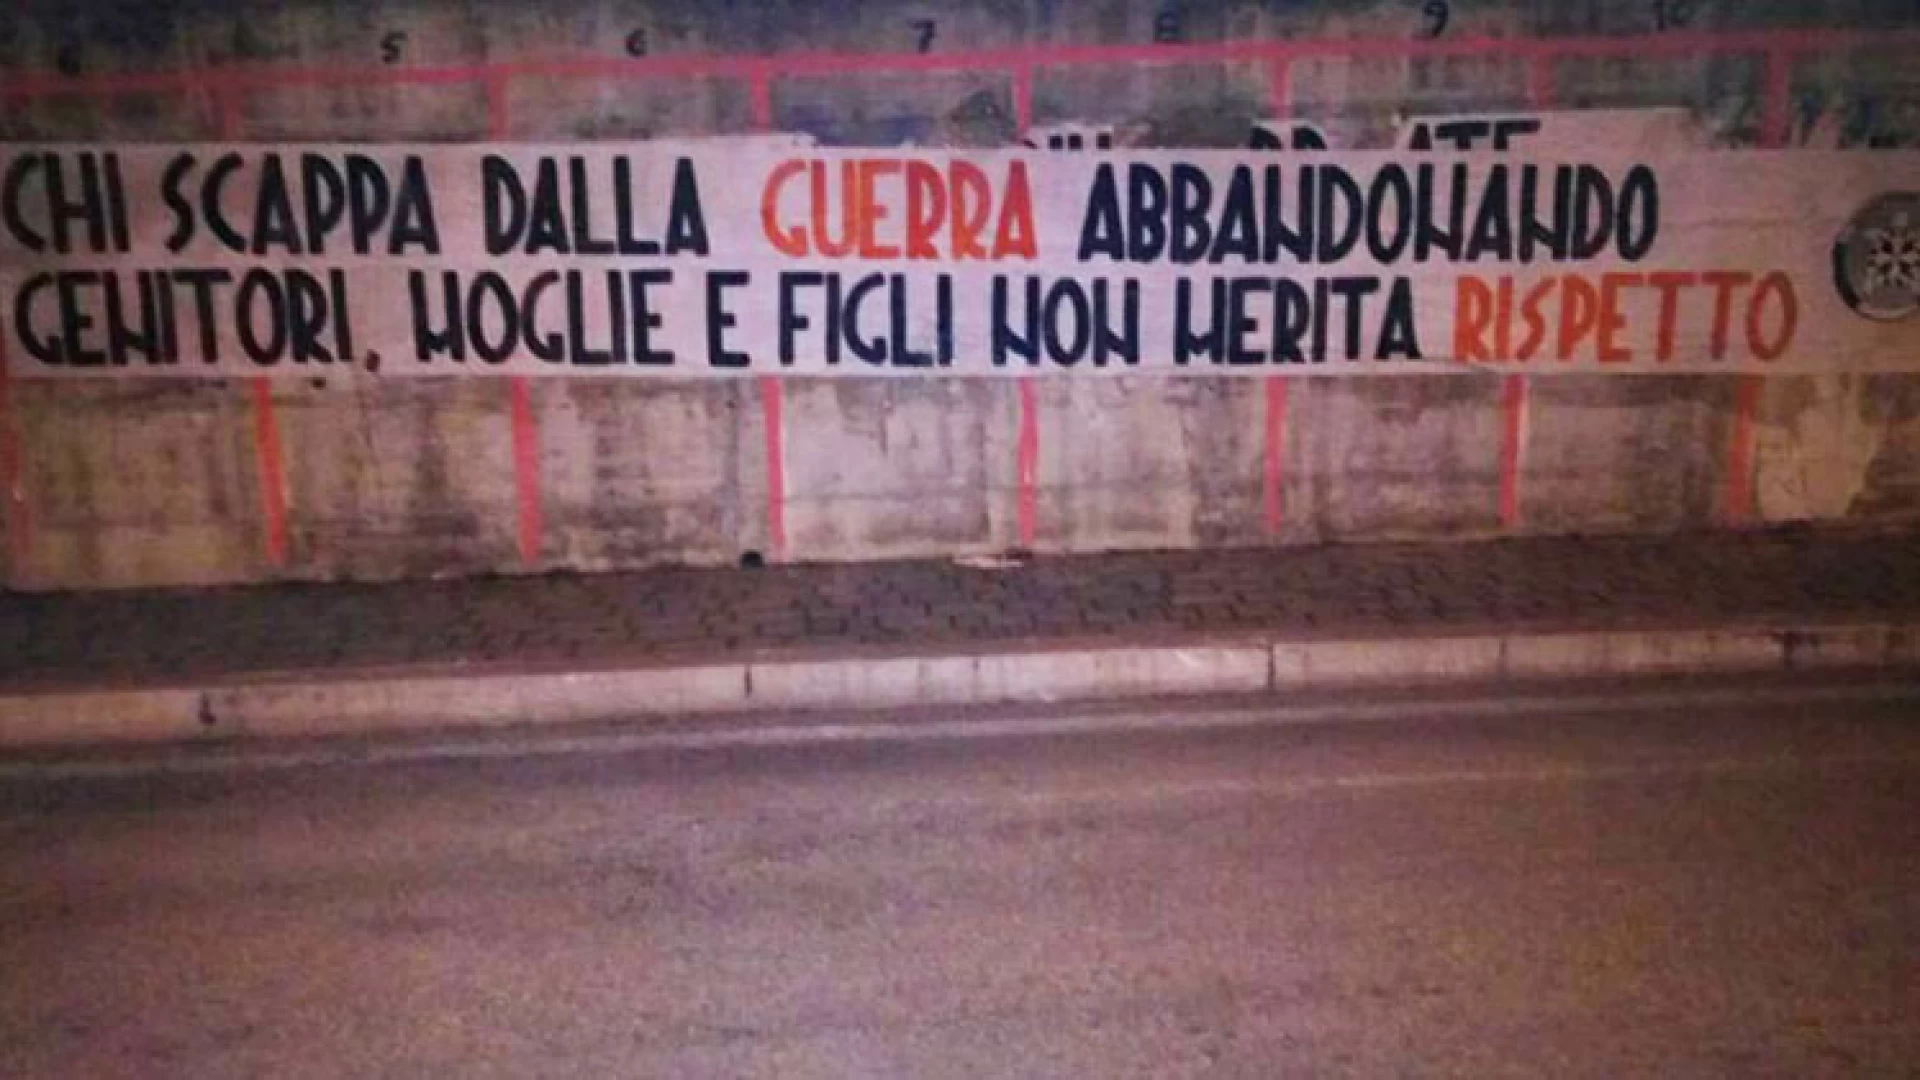 Immigrati: ‘chi scappa dalla guerra non merita rispetto’, striscioni ‘choc’ di CasaPound in 100 città italiane